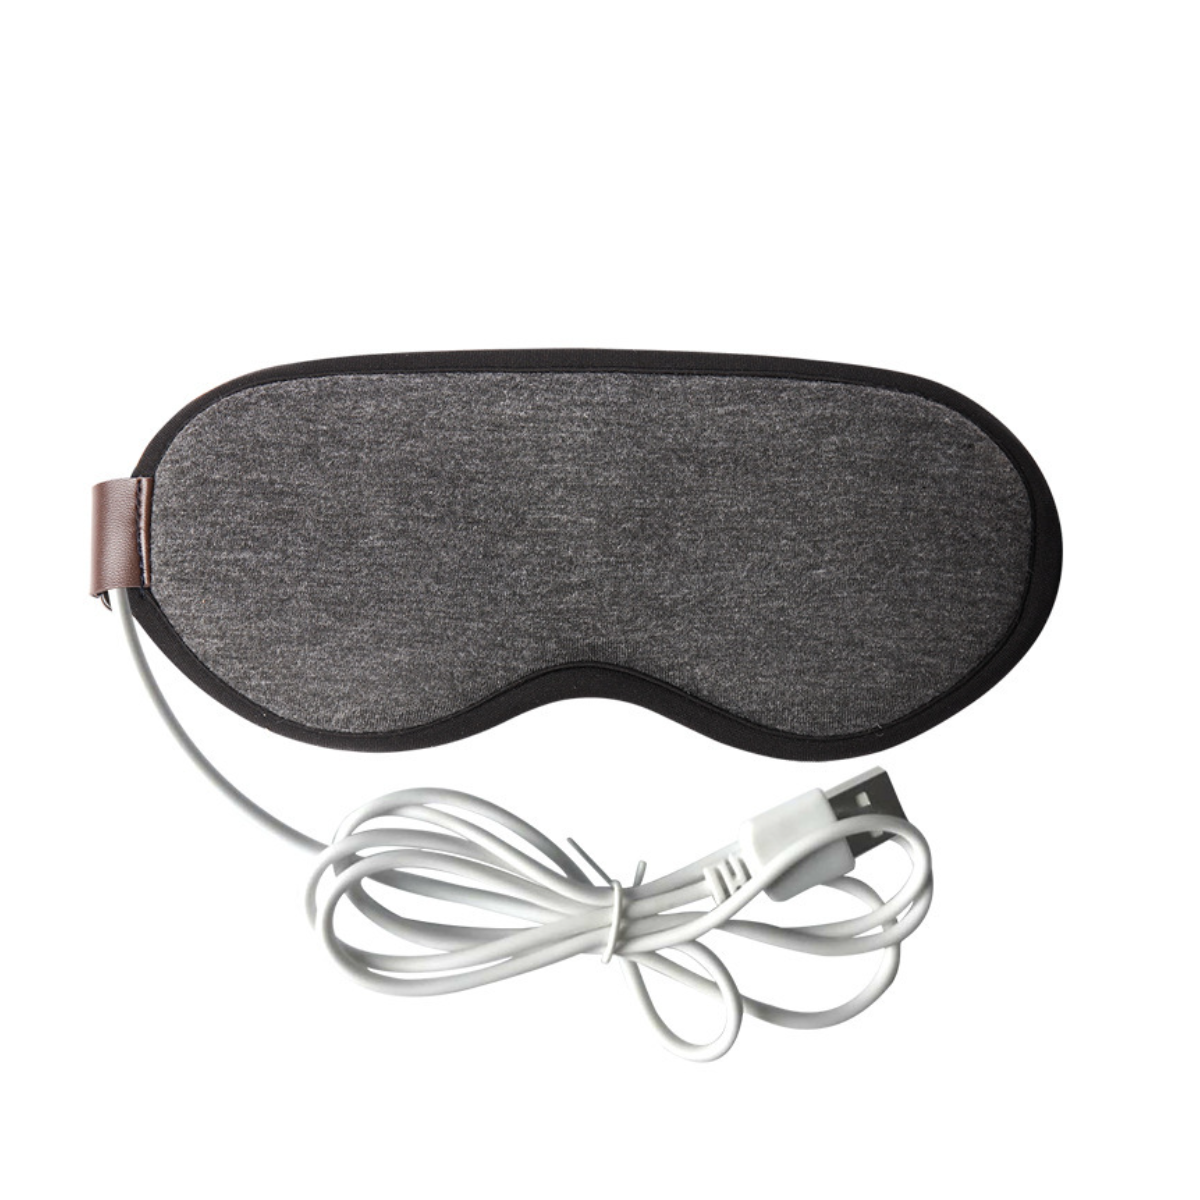 Funktion-Grau Heizung wiederaufladbare usb Einfaches praktische Dampf-Augenmaske4.5W: Dampf-Augenmaske Design, UWOT